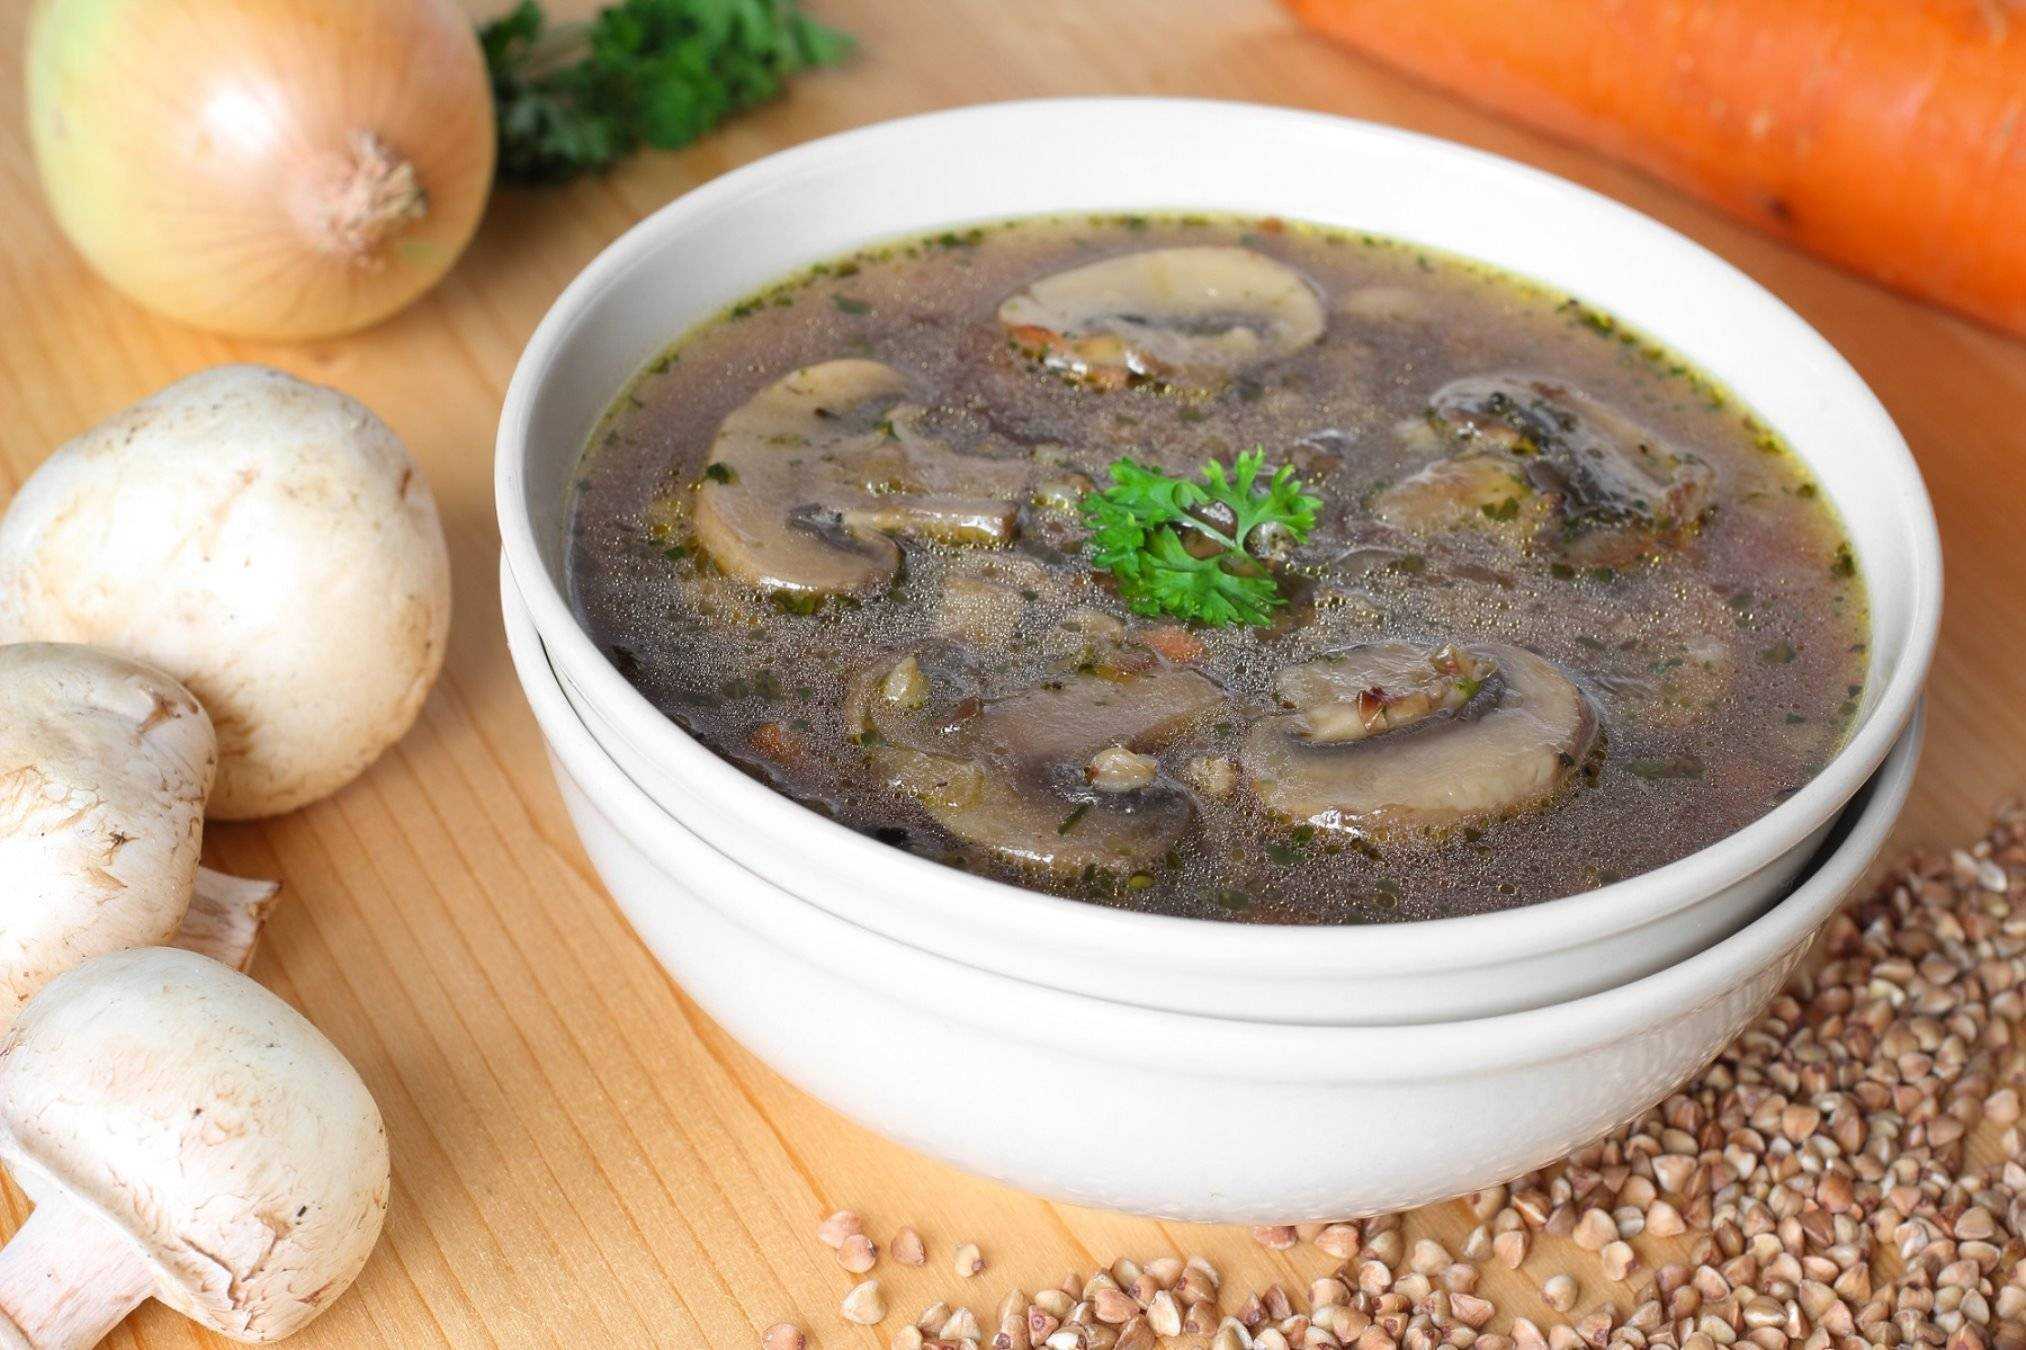 Грибной суп - самые вкусные рецепты с мясом, пошагово с фото